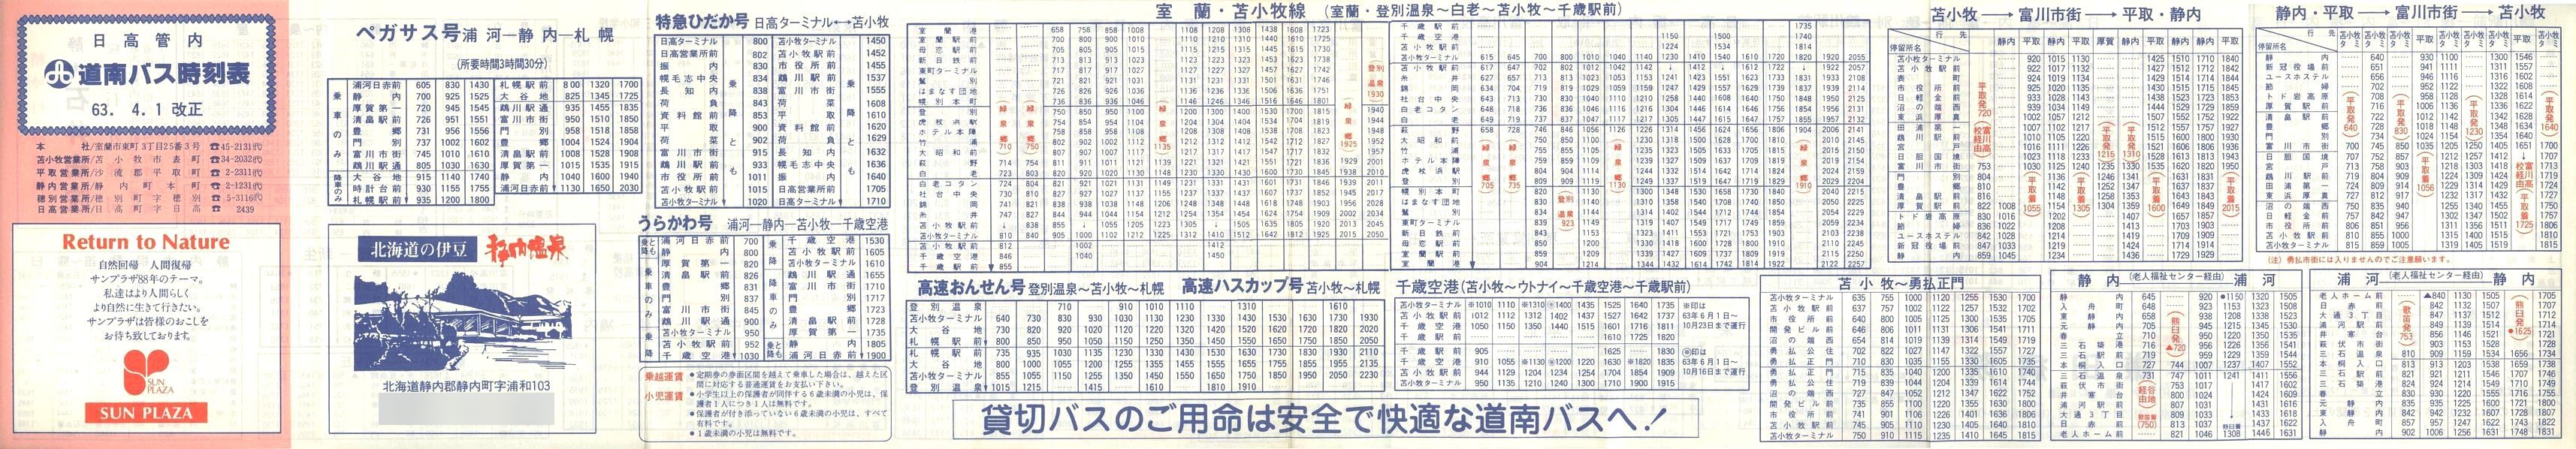 1988-04-01改正_道南バス_日高管内時刻表表面